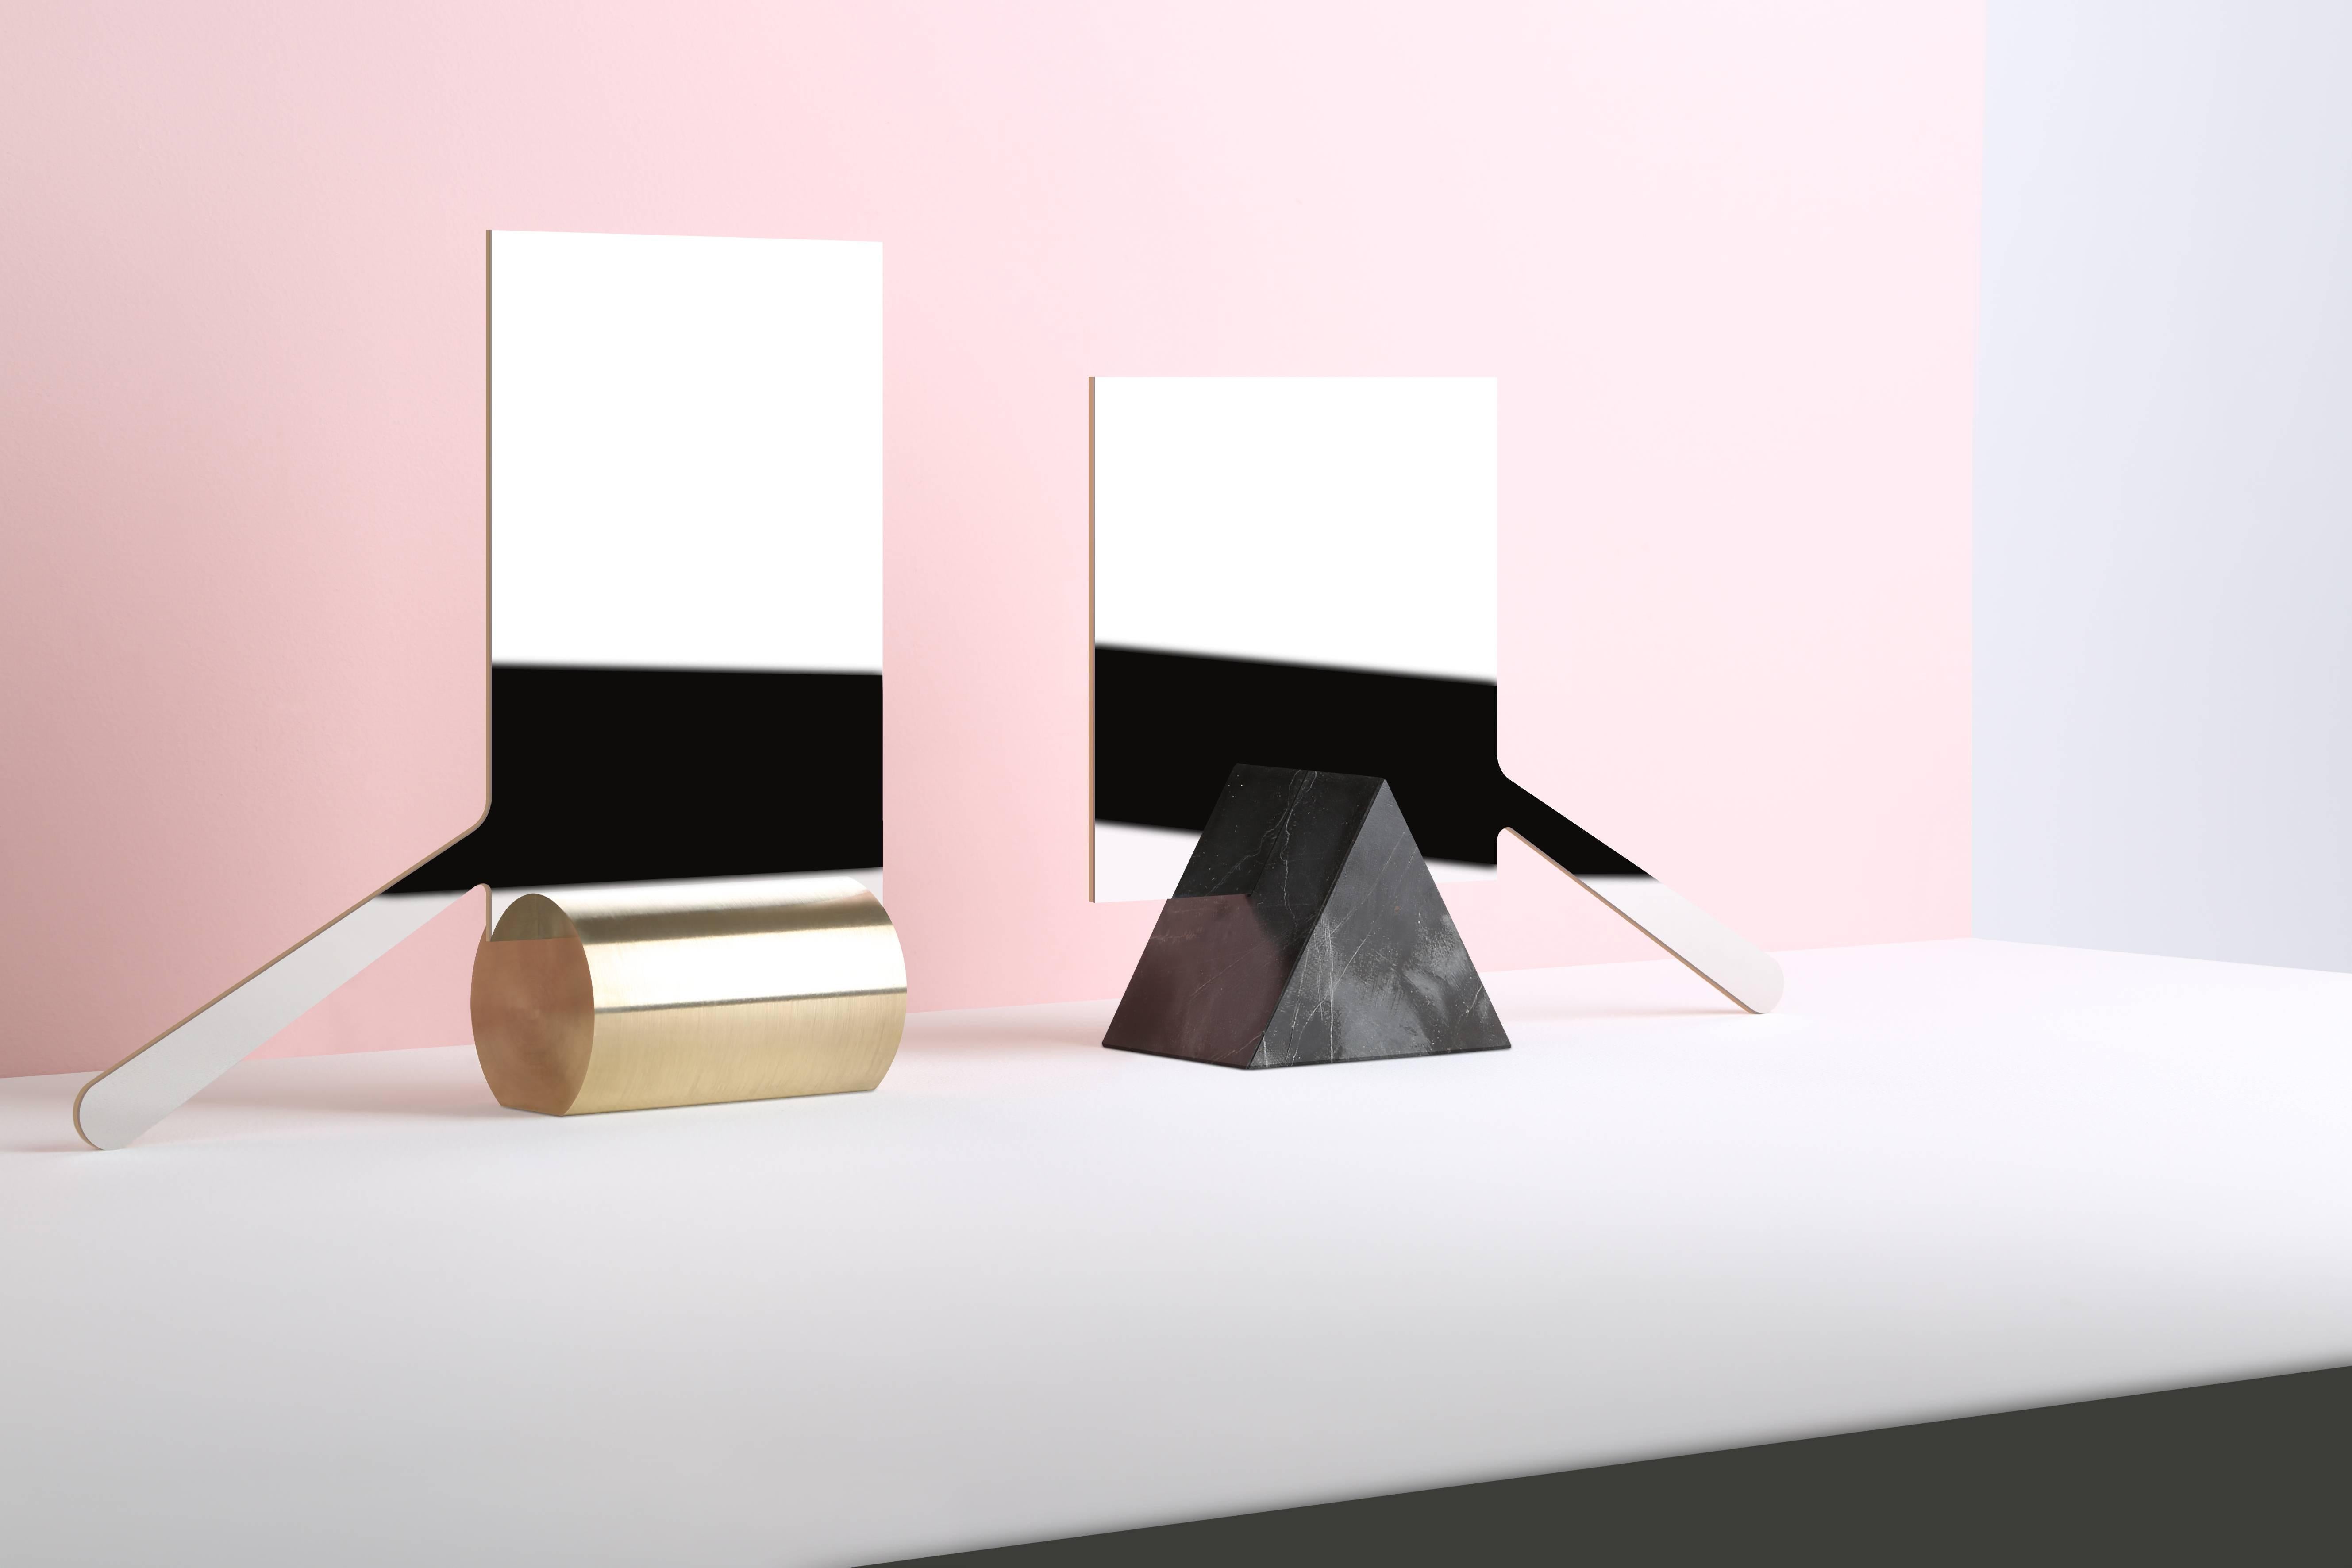 Collection de miroirs du designer libanais Richard Yasmine
Tôle d'acier inoxydable poli super-mirrodé - Socle en marbre, laiton ou métal
Dimensions variables en fonction des différents modèles. 

Modèle carré :
12 x 12 x 0,3 cm
(Base